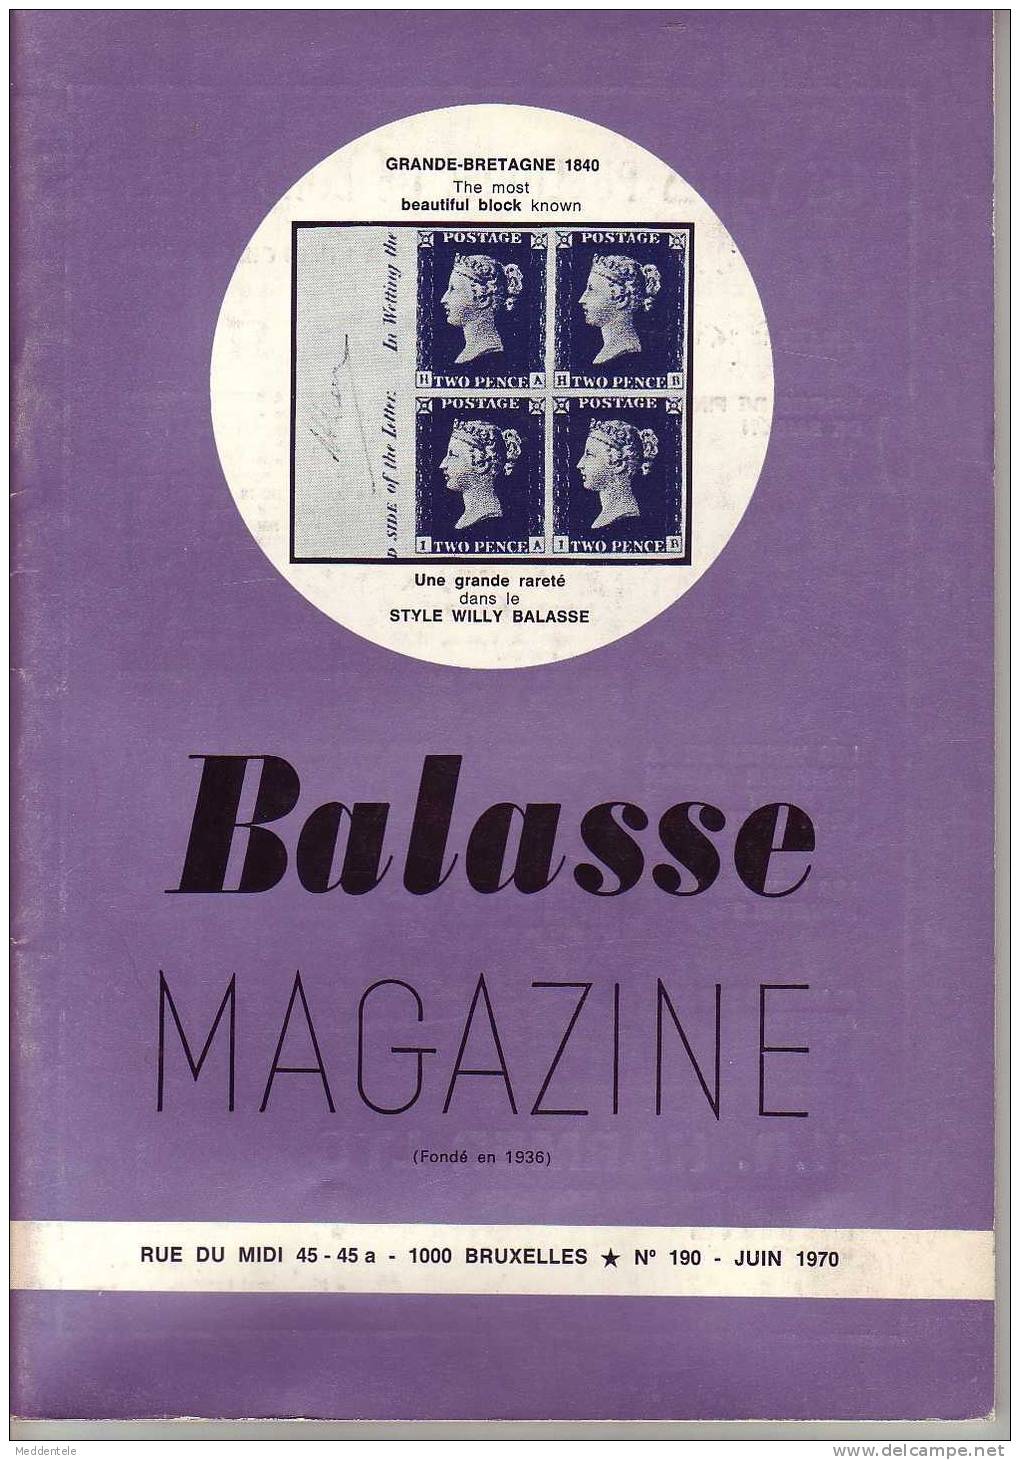 BALASSE MAGAZINE N° 190 - Français (àpd. 1941)